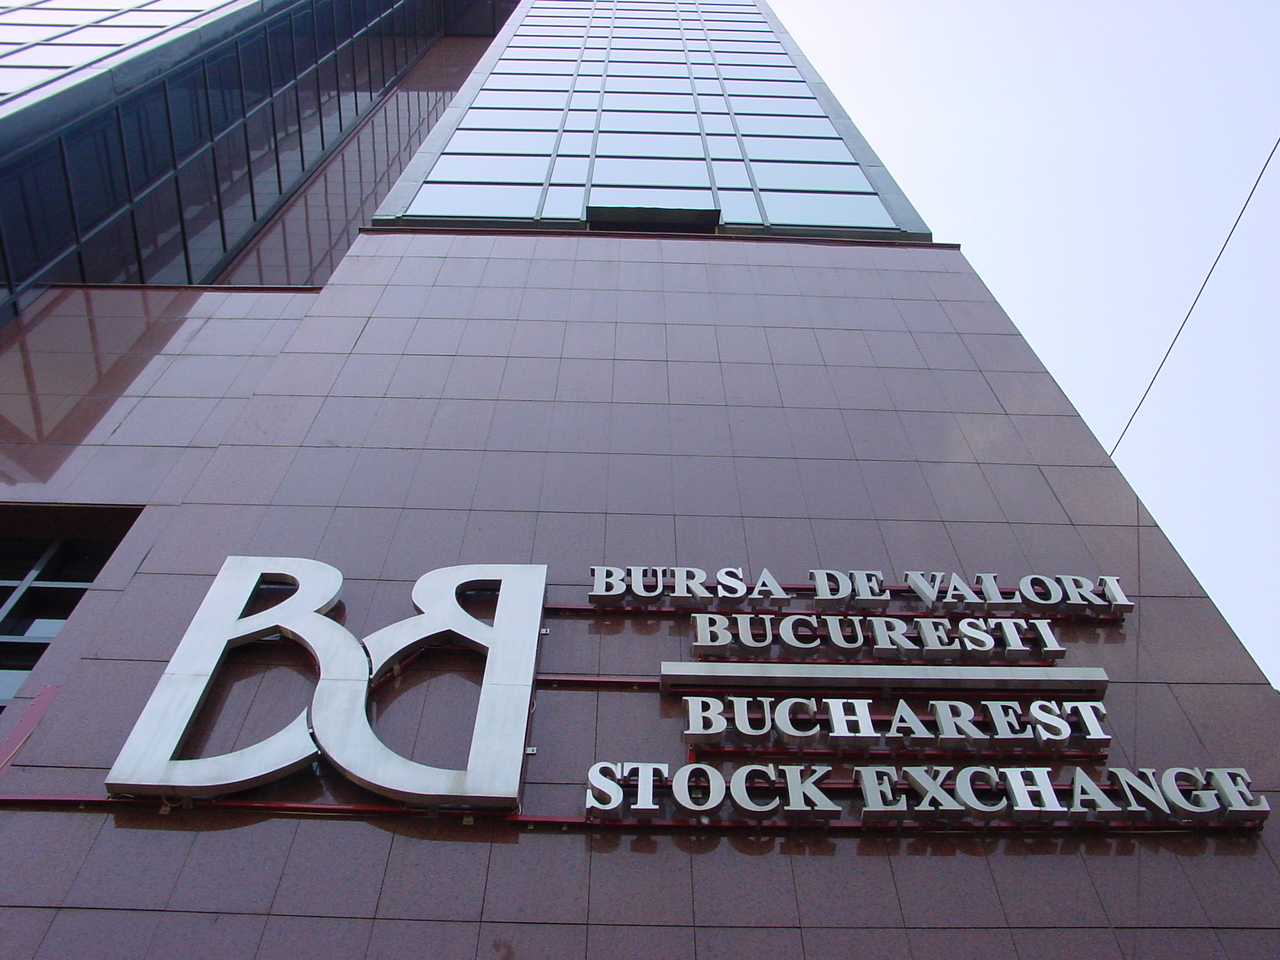 Capitalizarea companiilor româneşti listate la Bursa de Valori Bucureşti a ajuns la aproape 137 miliarde lei, la finalul primelor opt luni